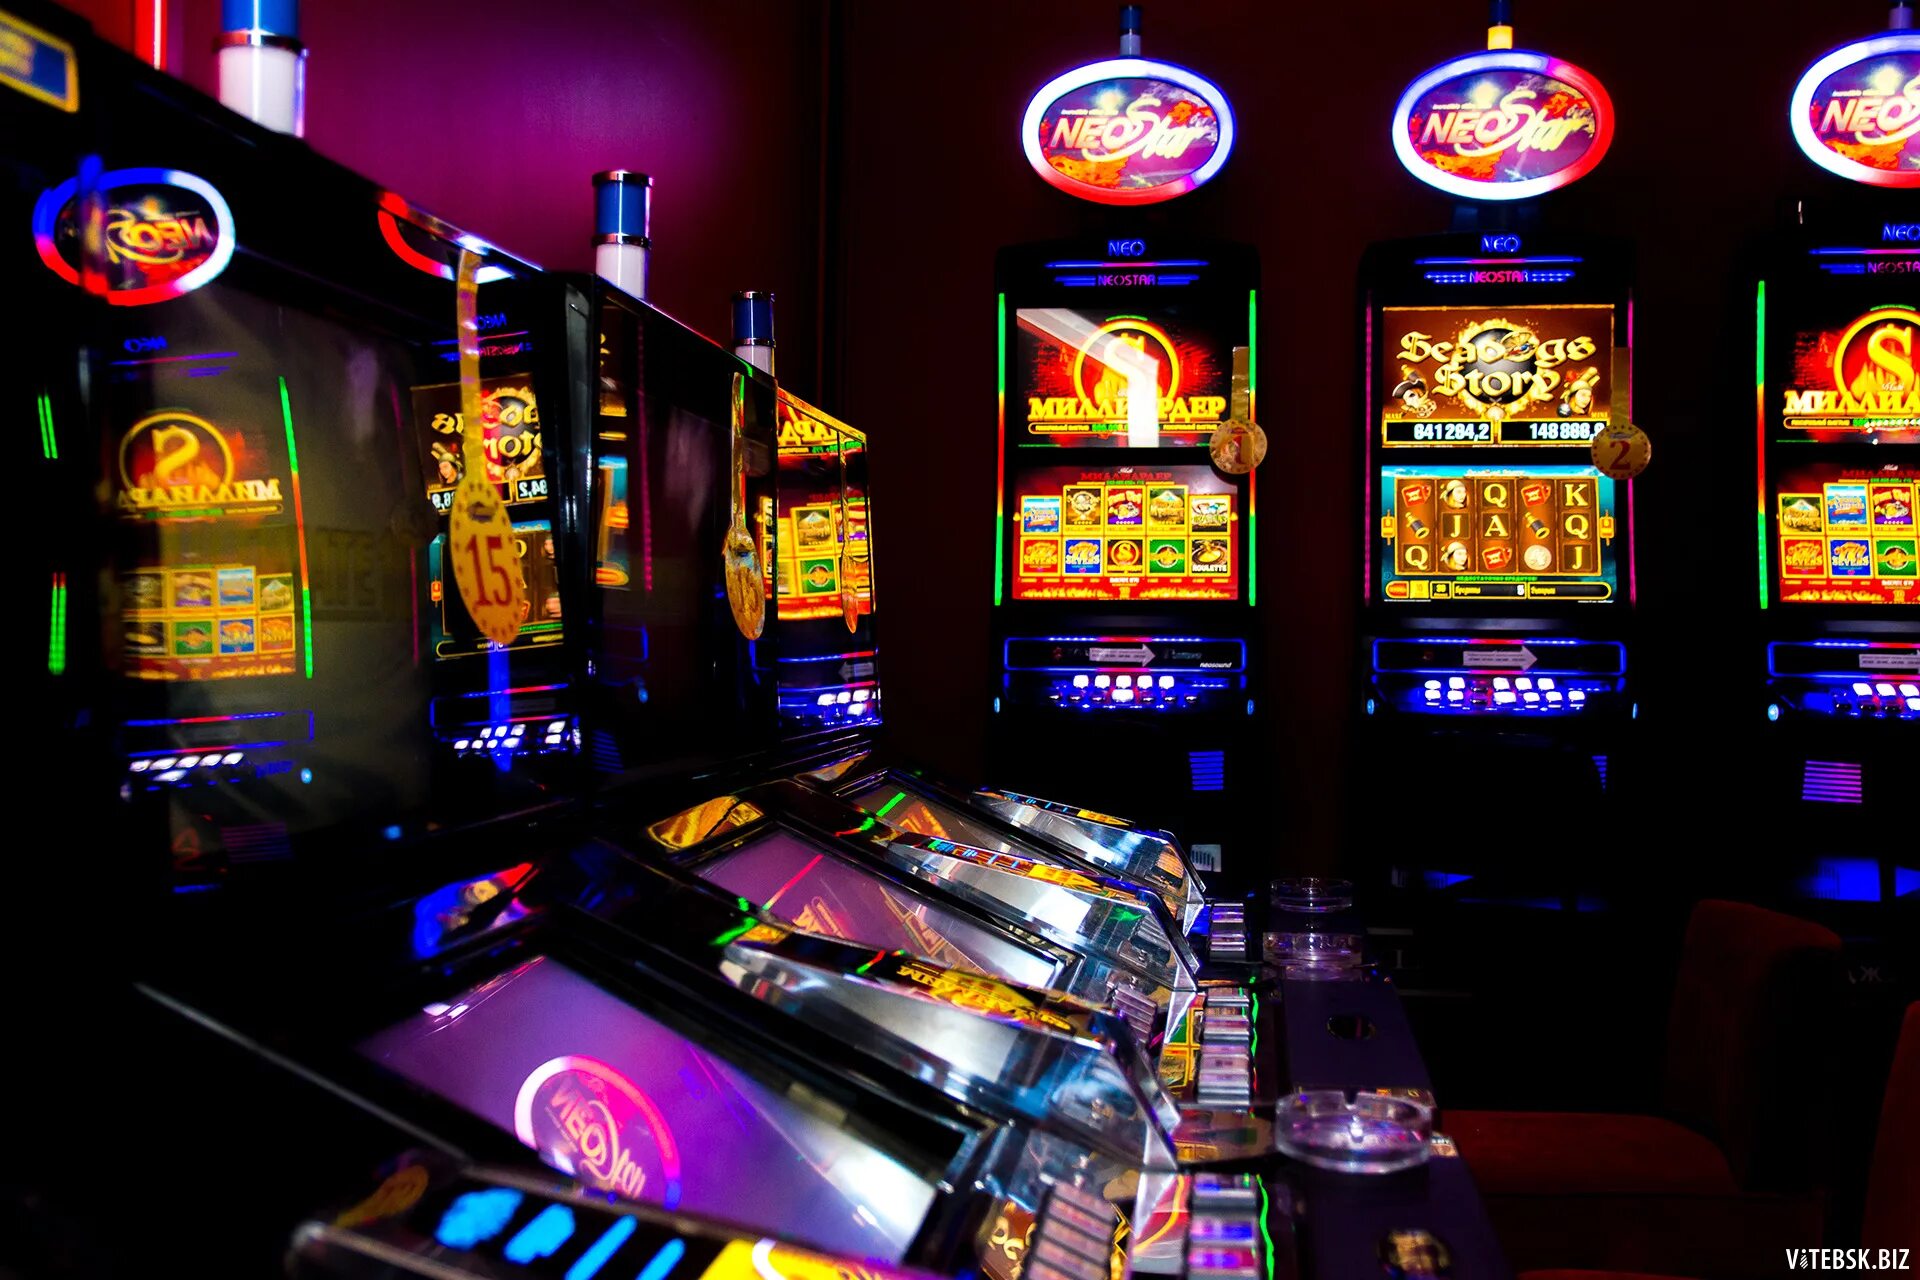 Слотосфера игровые автоматы казино. Игровой зал 777 зал популярных игровых аппаратов. Азартные игровые автоматы гаминатор. Название игровых автоматов. Игровые автоматы с наилучшим рейтингом производителей